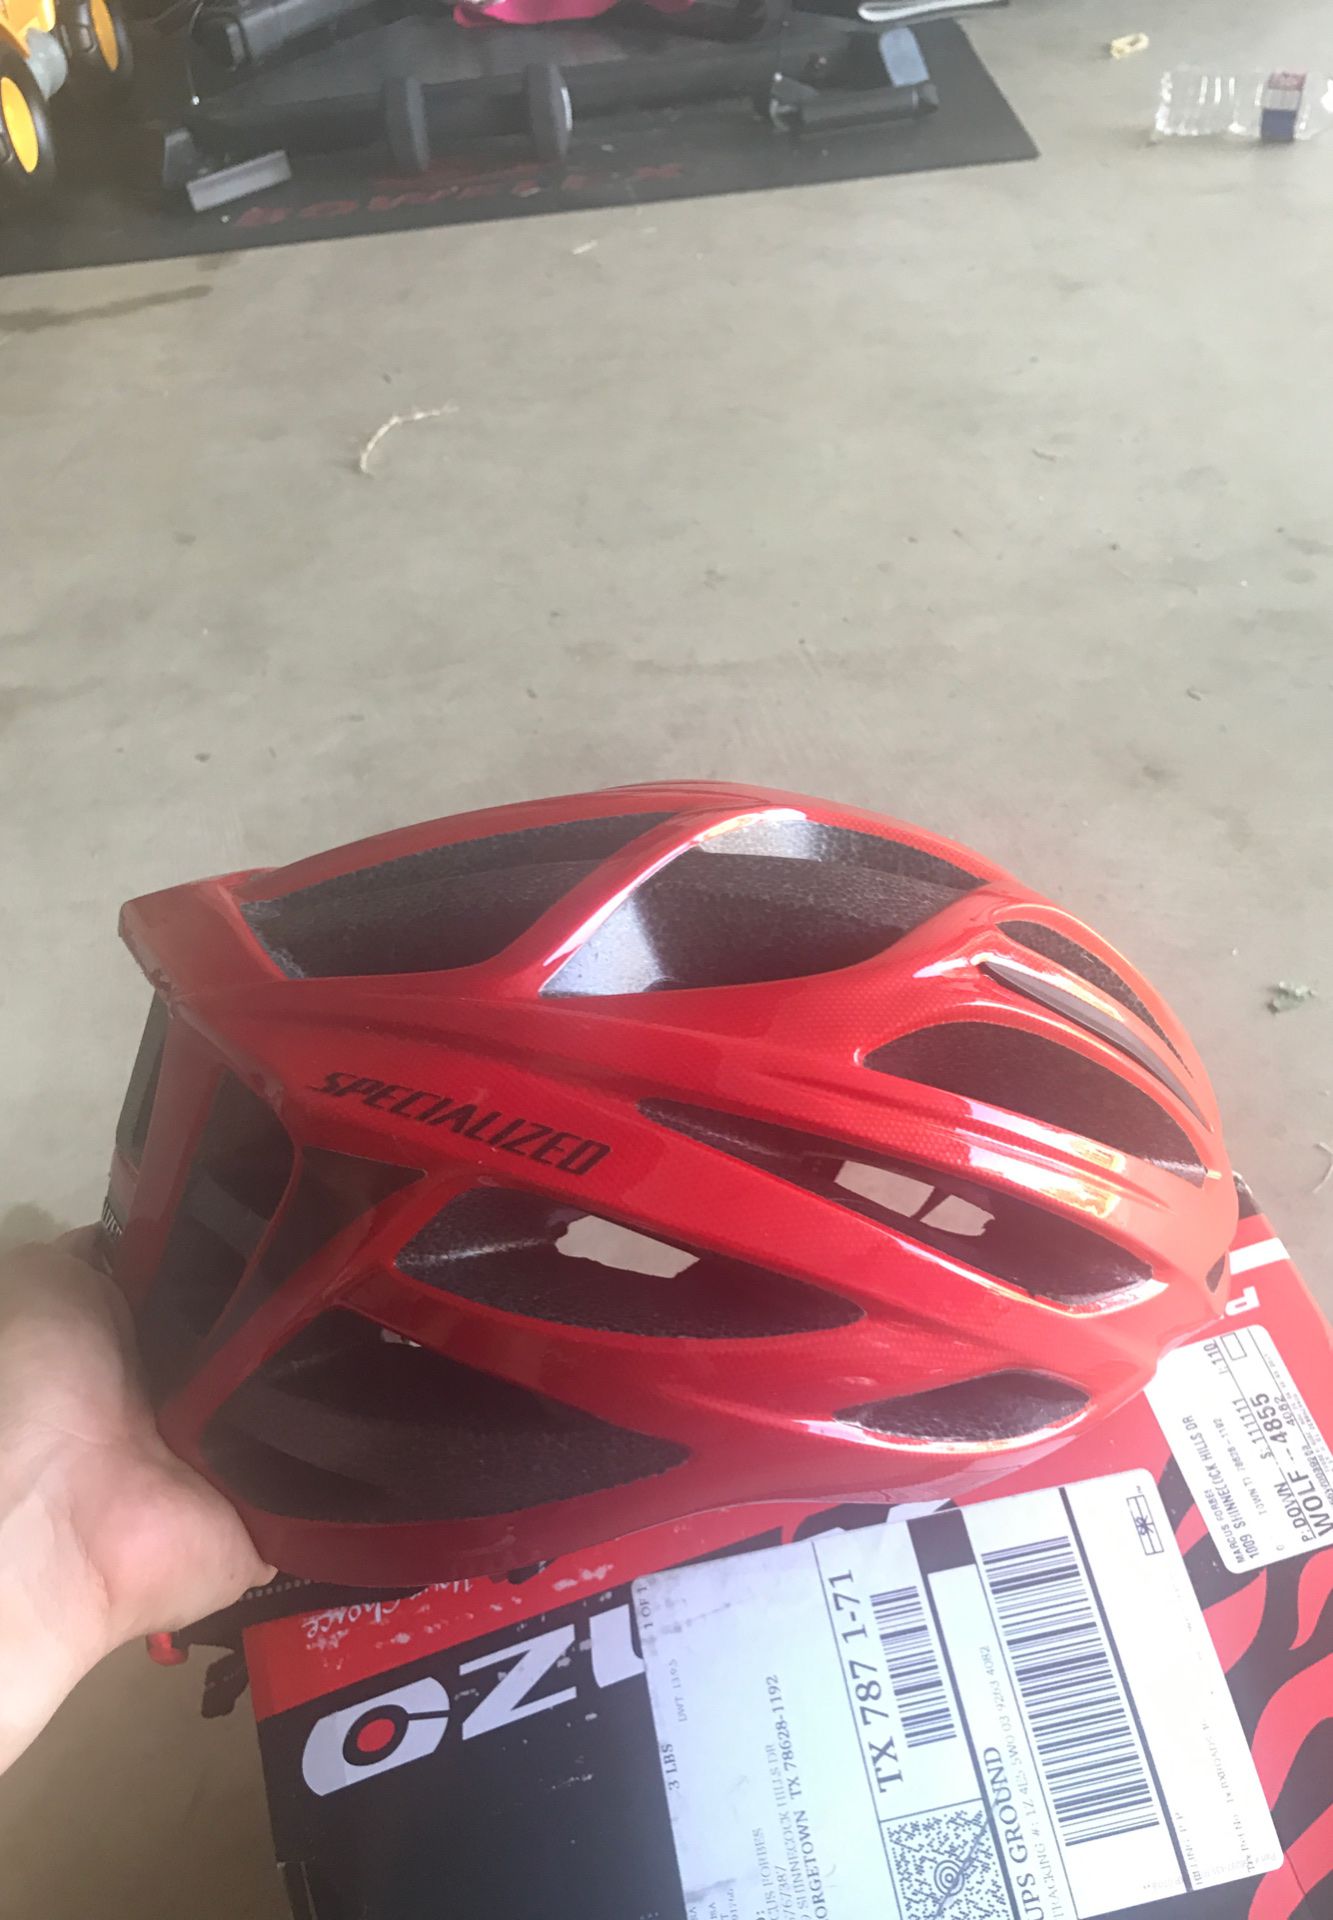 Specialized Bike Helmet